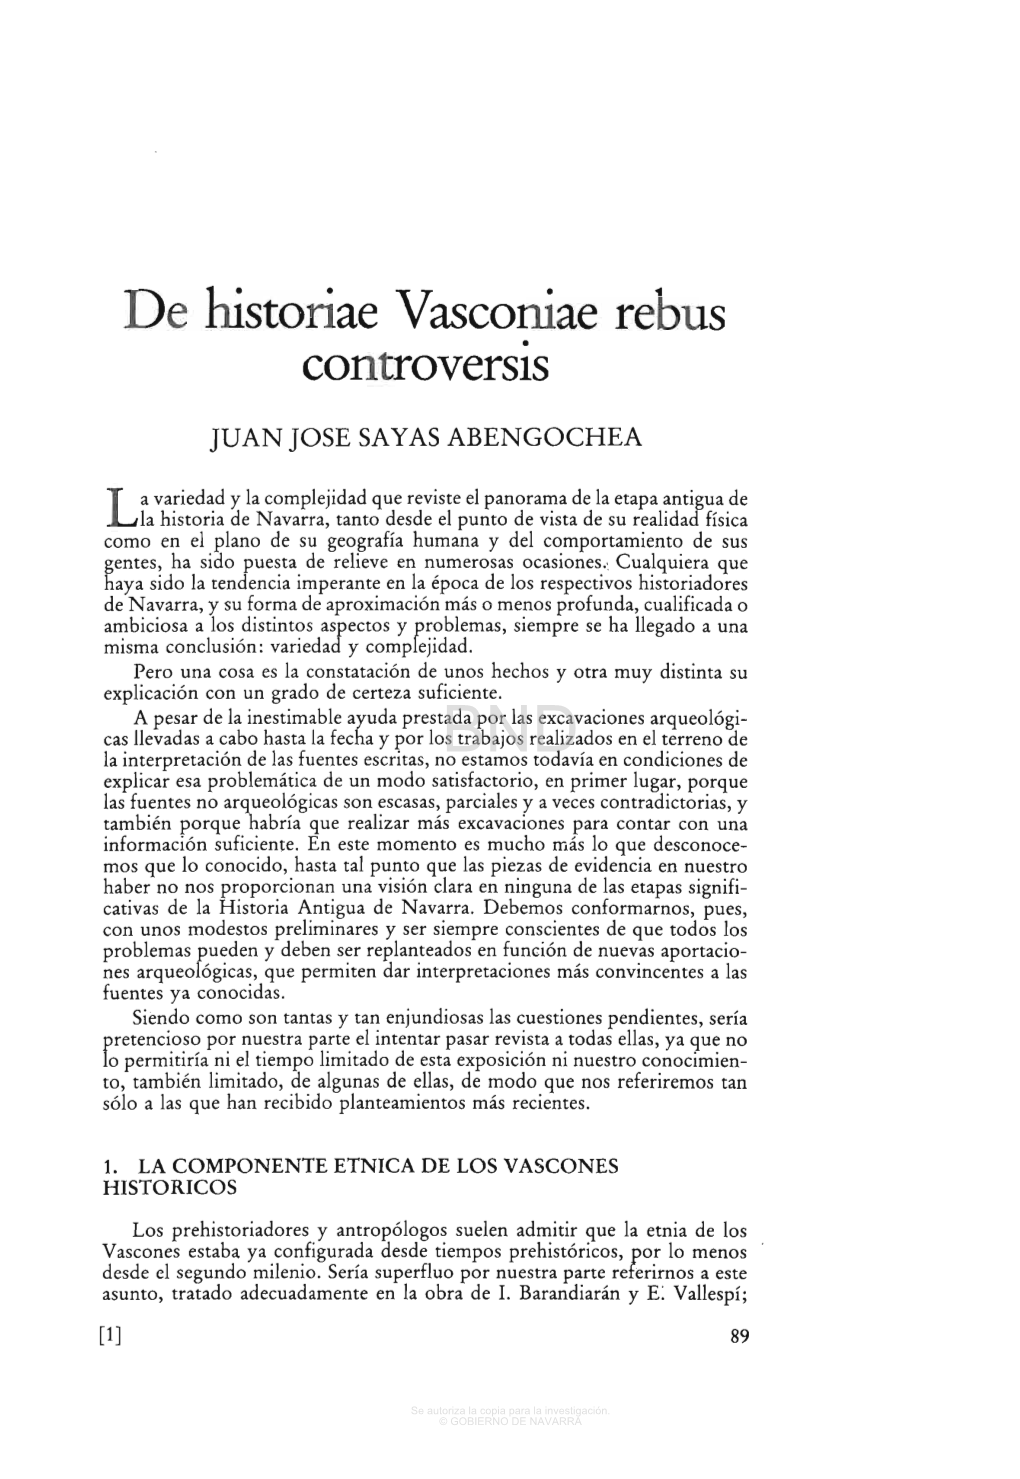 De Historiae Vasconiae Rebus Controversis